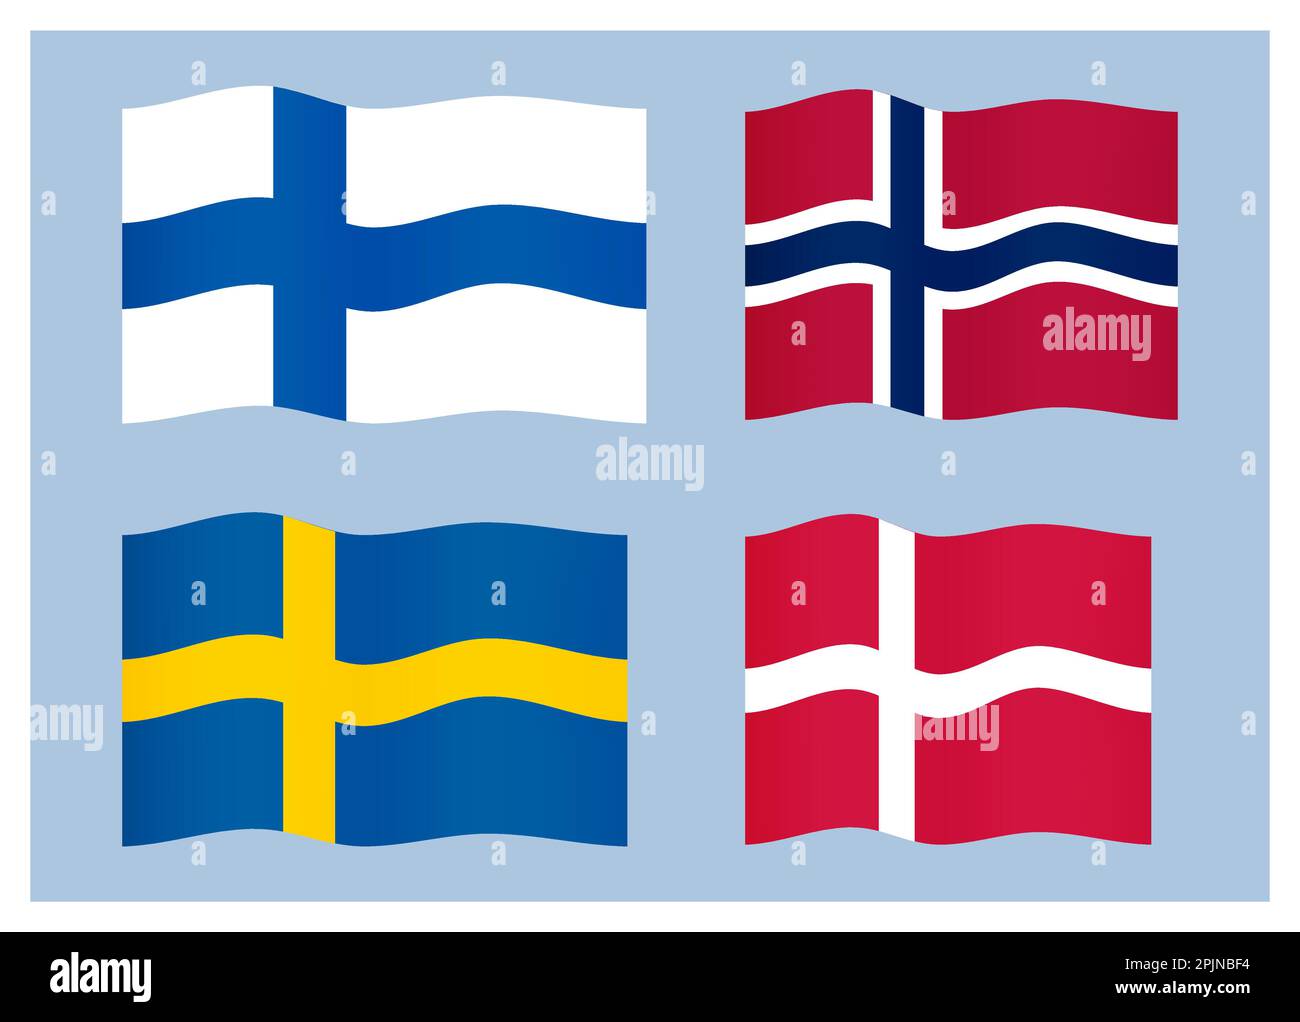 Serie di bandiere scandinave, dei paesi del nord. Svezia, Norvegia, Danimarca, Finlandia o svezia, danimarca, bandiera nazionale norvegese, finlandese. Illustrazione vettoriale Illustrazione Vettoriale